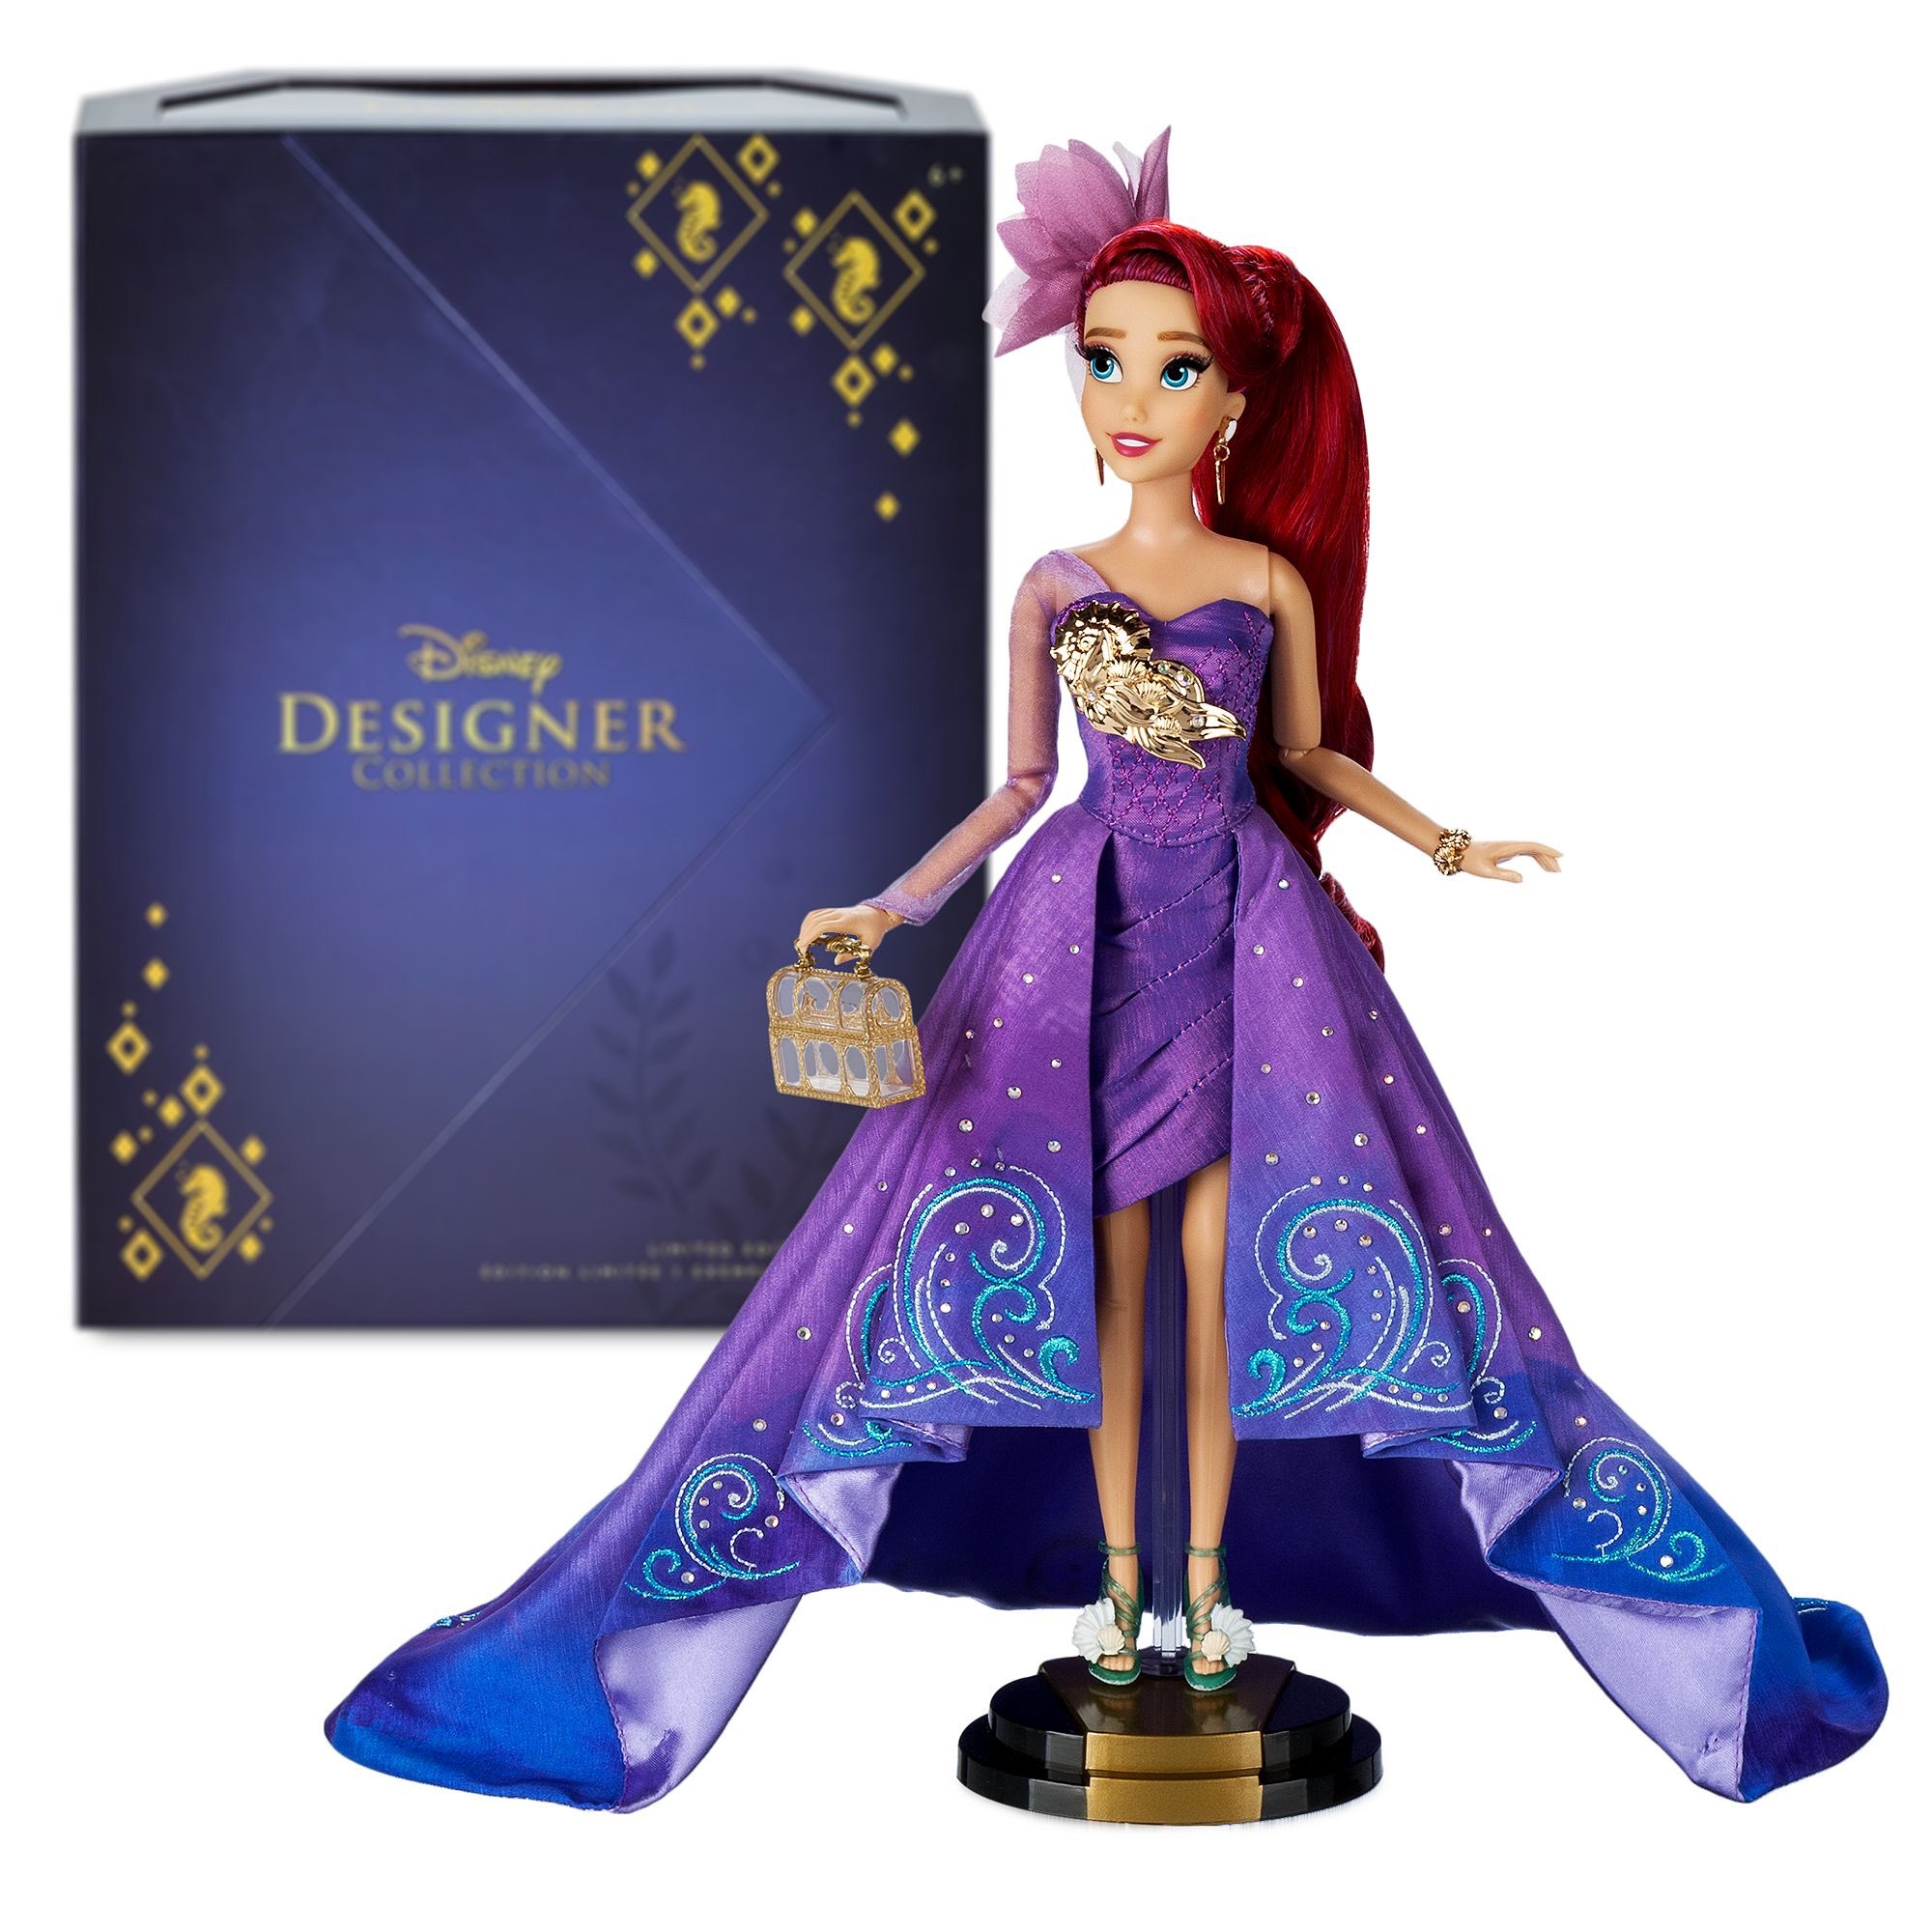 Het beste kapperszaak vervorming 15 new Disney Store Designer Collection Limited Edition Dolls 2021 - 2022  Ultimate Princess Celebration - YouLoveIt.com